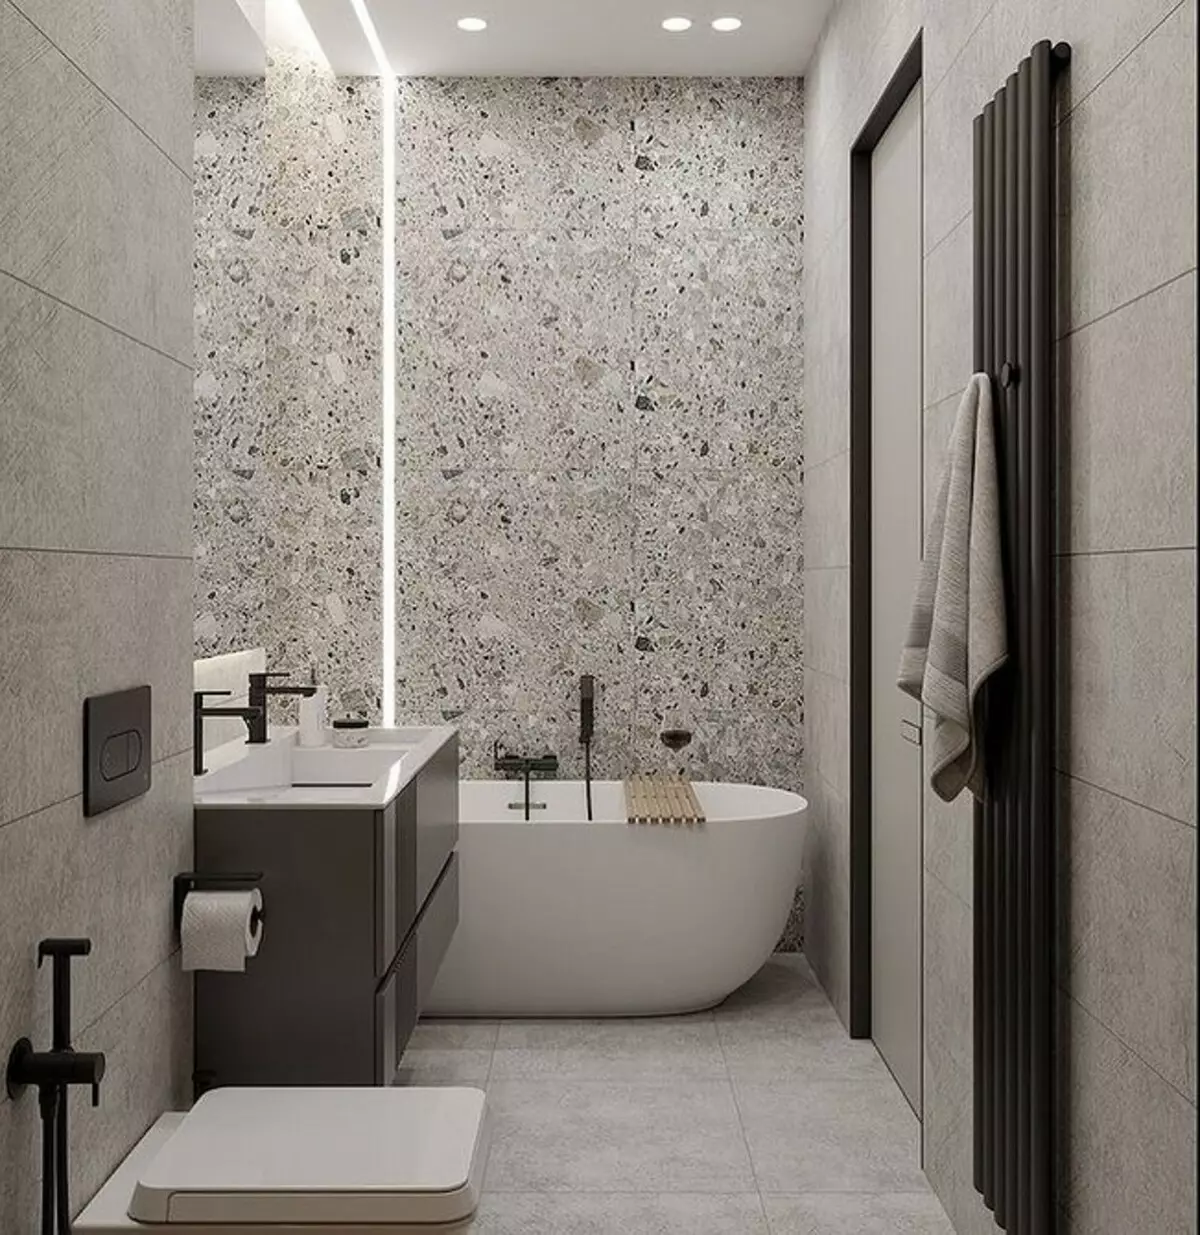 उबाऊ नहीं, और स्टाइलिश: एक ग्रे बाथरूम डिजाइन को सही तरीके से कैसे जारी करें 3159_123